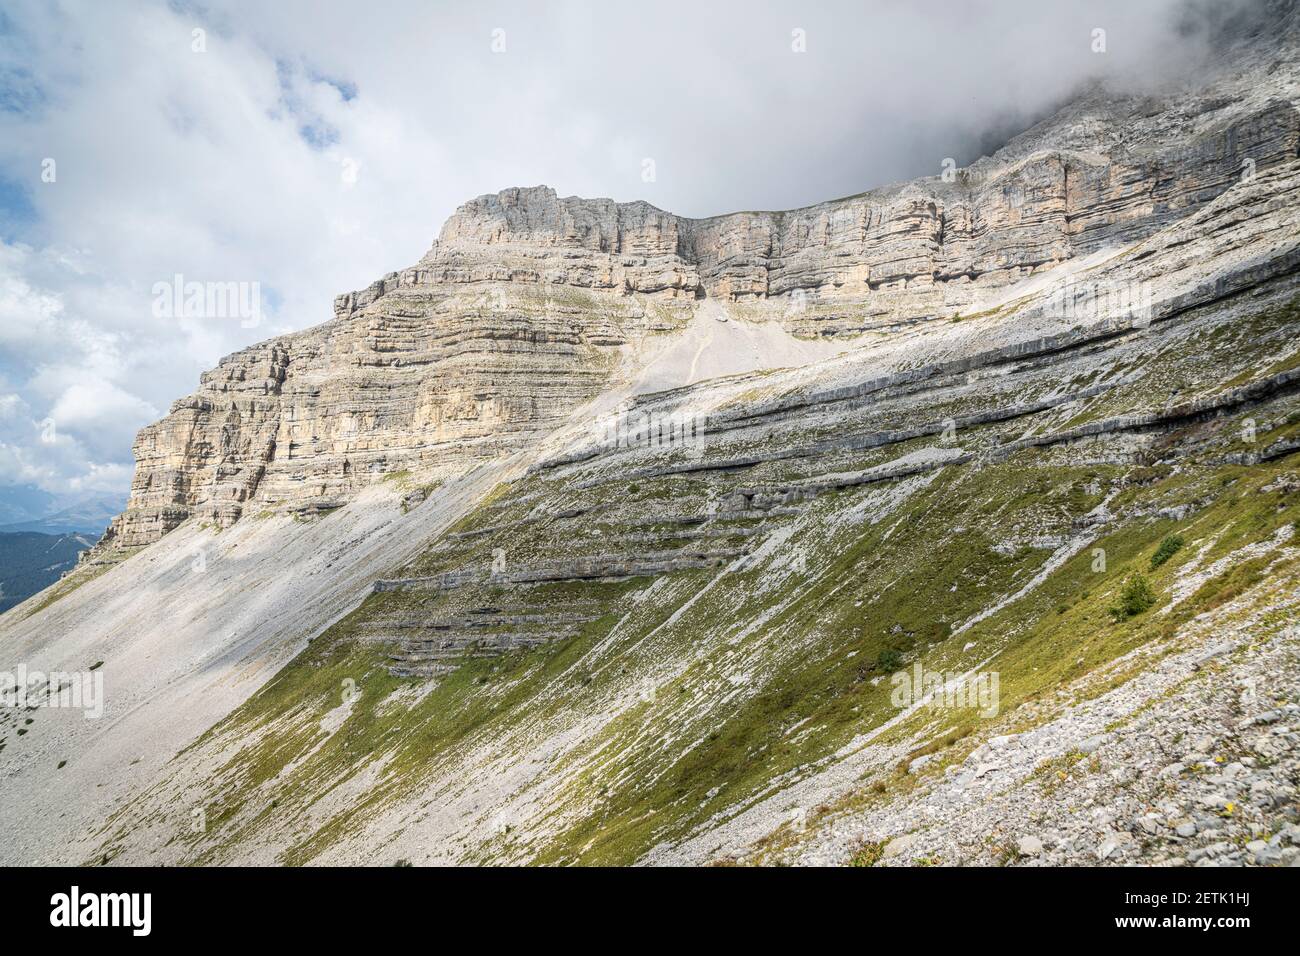 Cime rocciose delle Dolomiti di Brenta sul sentiero che porta alla zona geologica degli Orti della Regina, Madonna di Campiglio, Trentino-Alto Adige, Italia Foto Stock